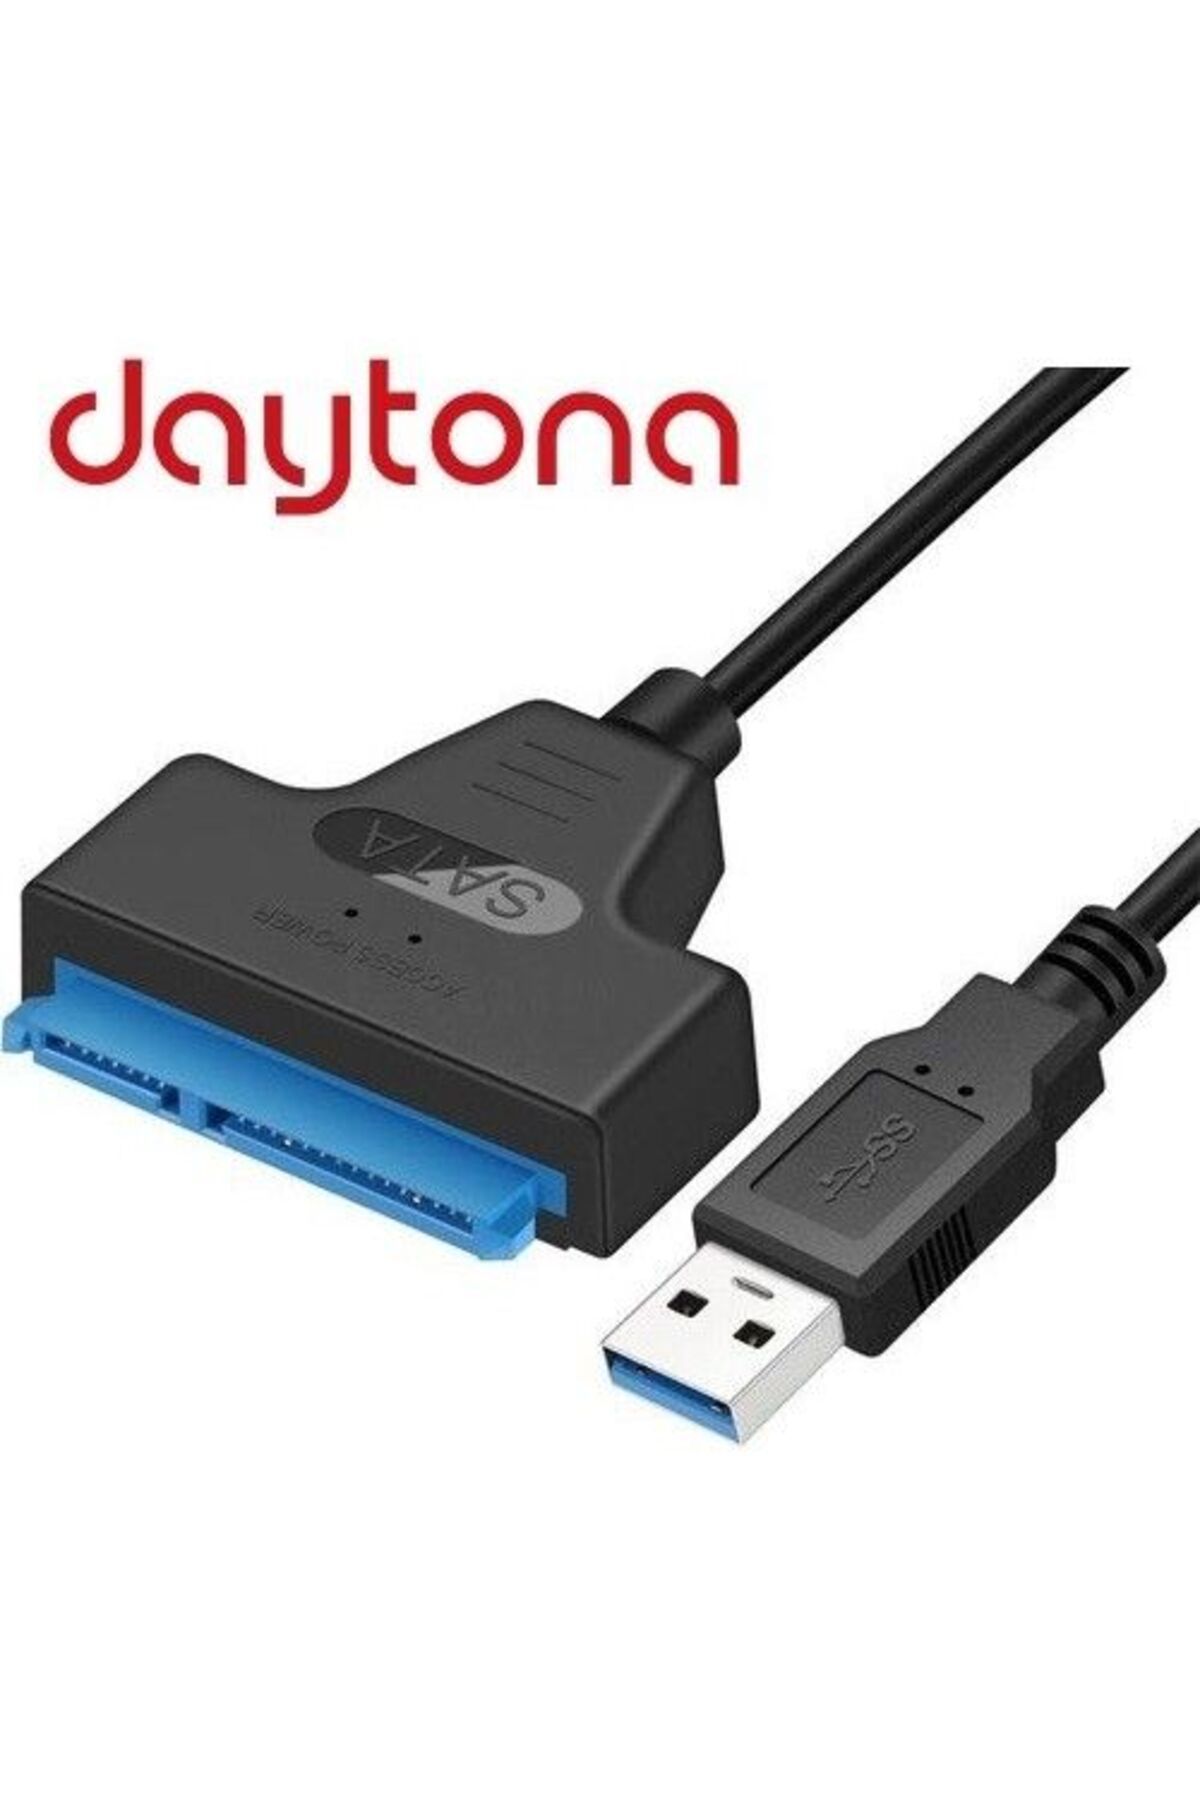 Daytona A4706 50cm Usb3.0 2.5" Sata Ssd Hdd Çeviri Ci (GİRİŞ:USB3.0 => ÇIKIŞ:2,5" SSD HDD) (3,5" Ile